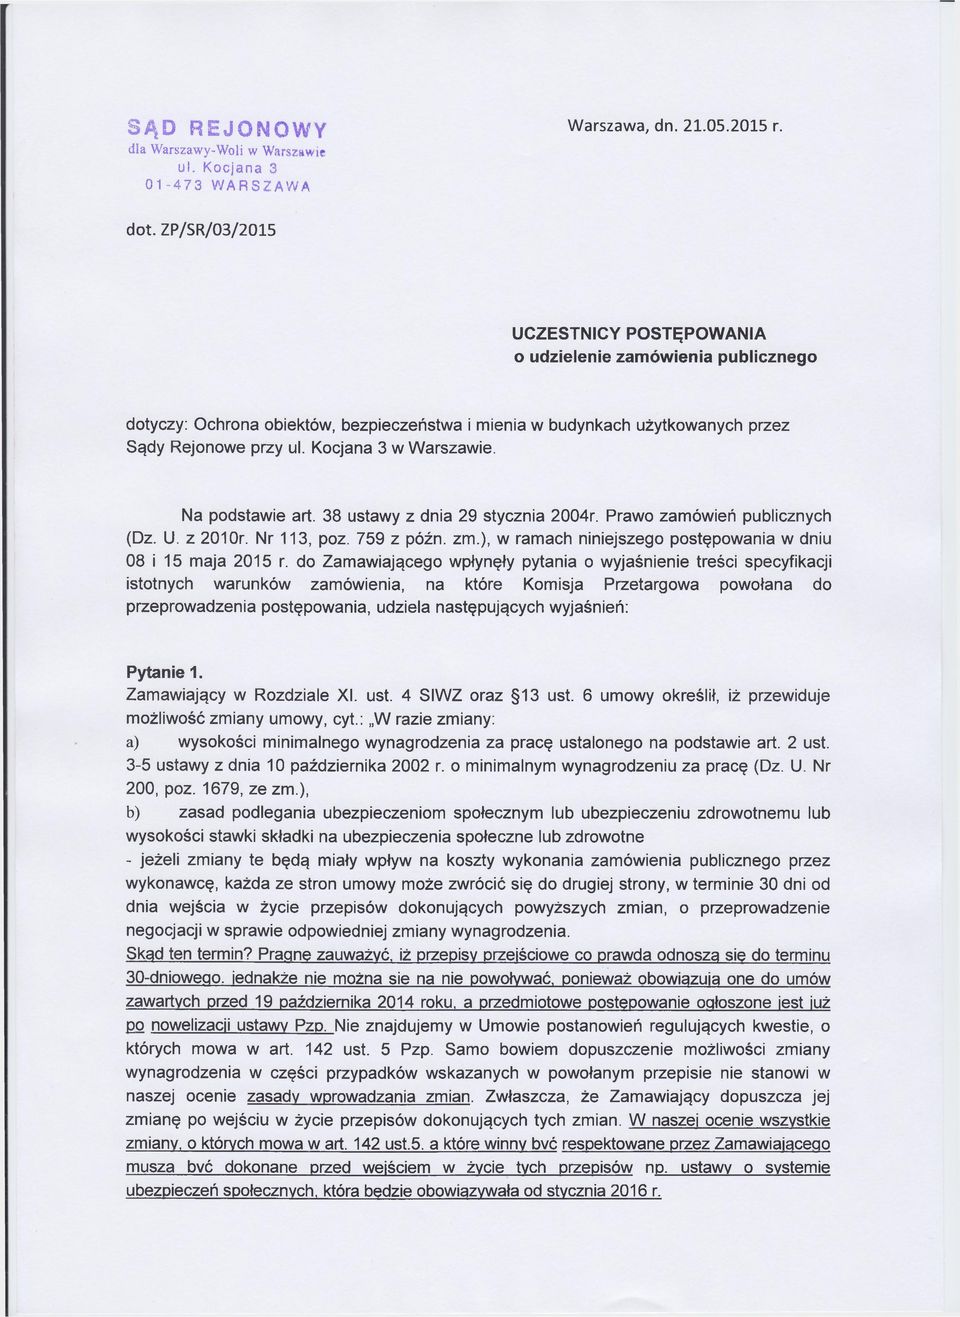 Kocjana 3 w Warszawie. Na podstawie art. 38 ustawy z dnia 29 stycznia 2004r. Prawo zamówień publicznych (Dz. U. z 2010r. Nr 113, poz. 759 z późn. zm.